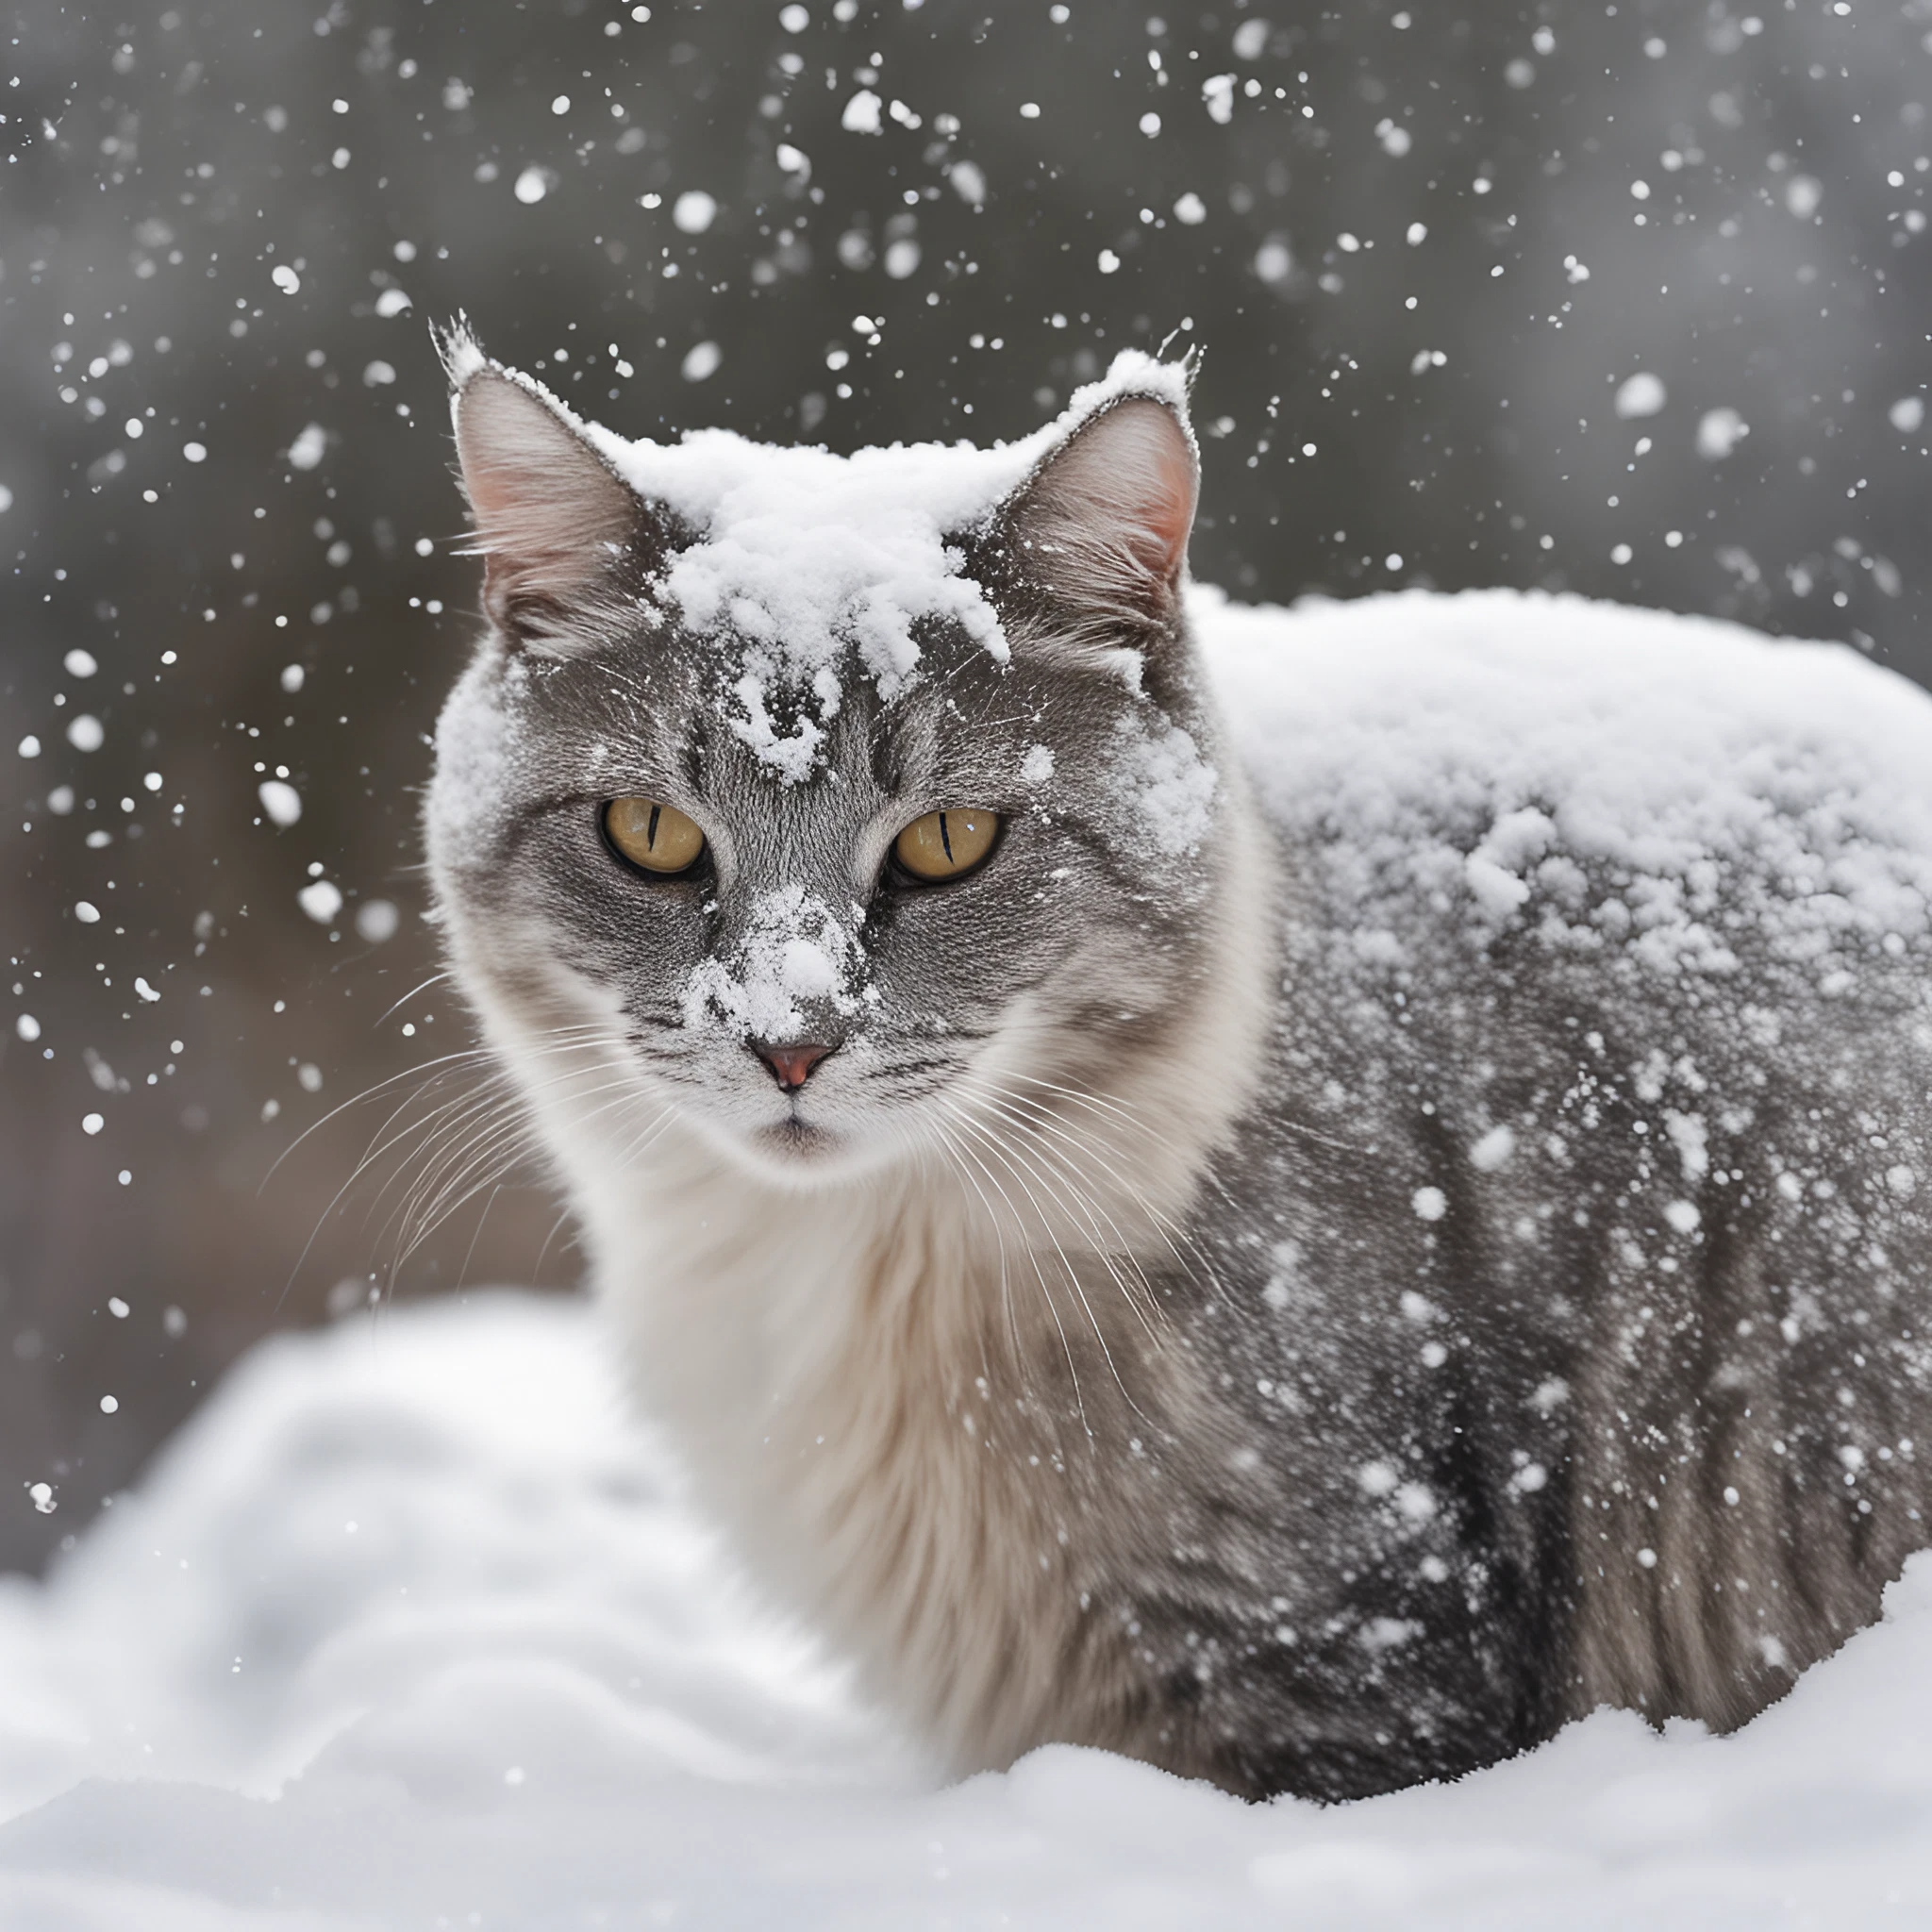 吹雪と雪の中でかっこいい鋭い目つきで睨む猫のリアル写真風フリーイラスト